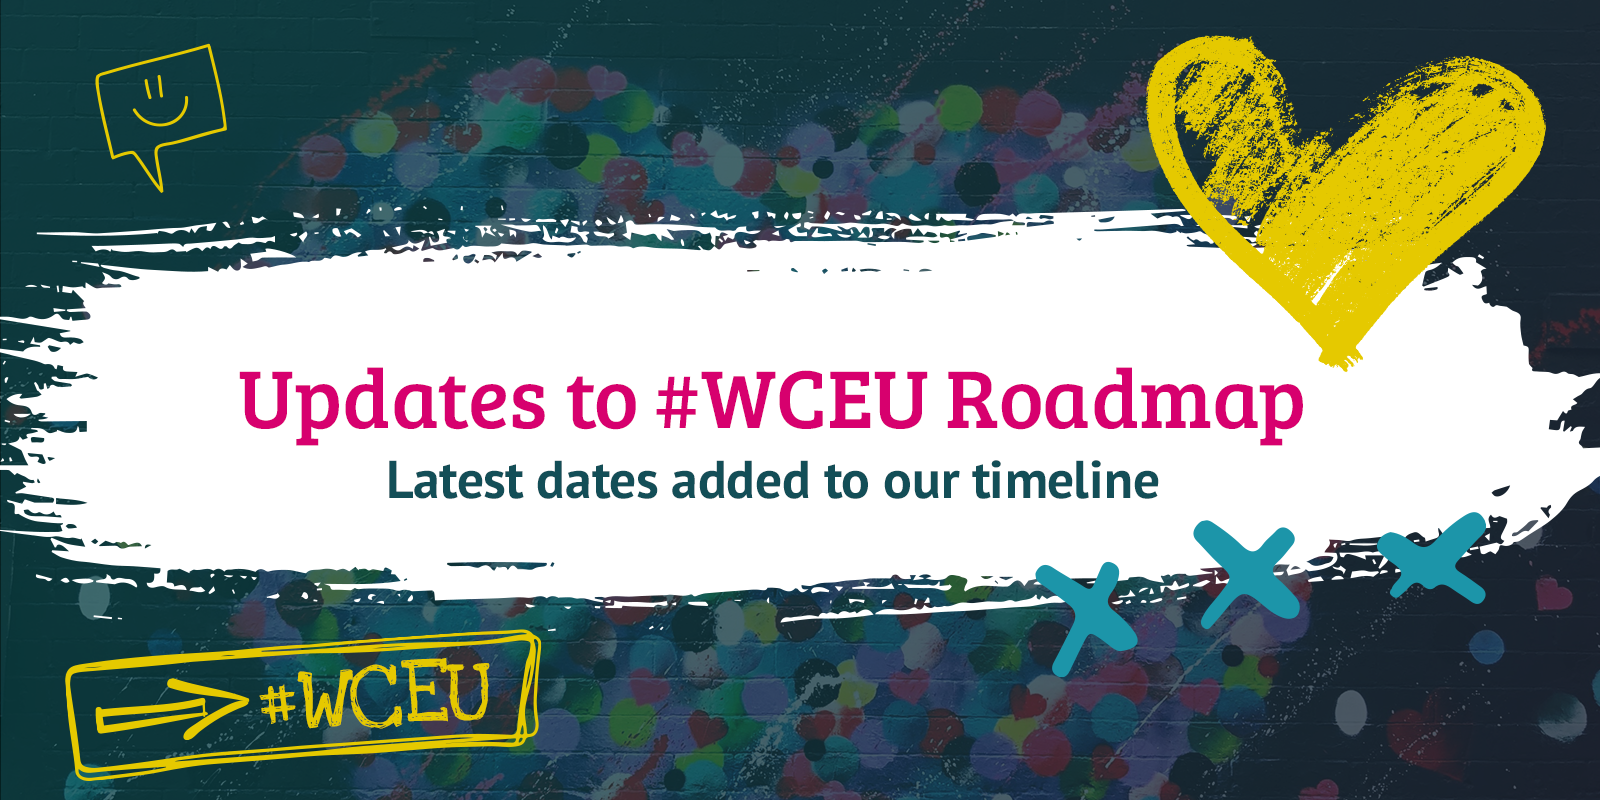 WCEU Roadmap Updates